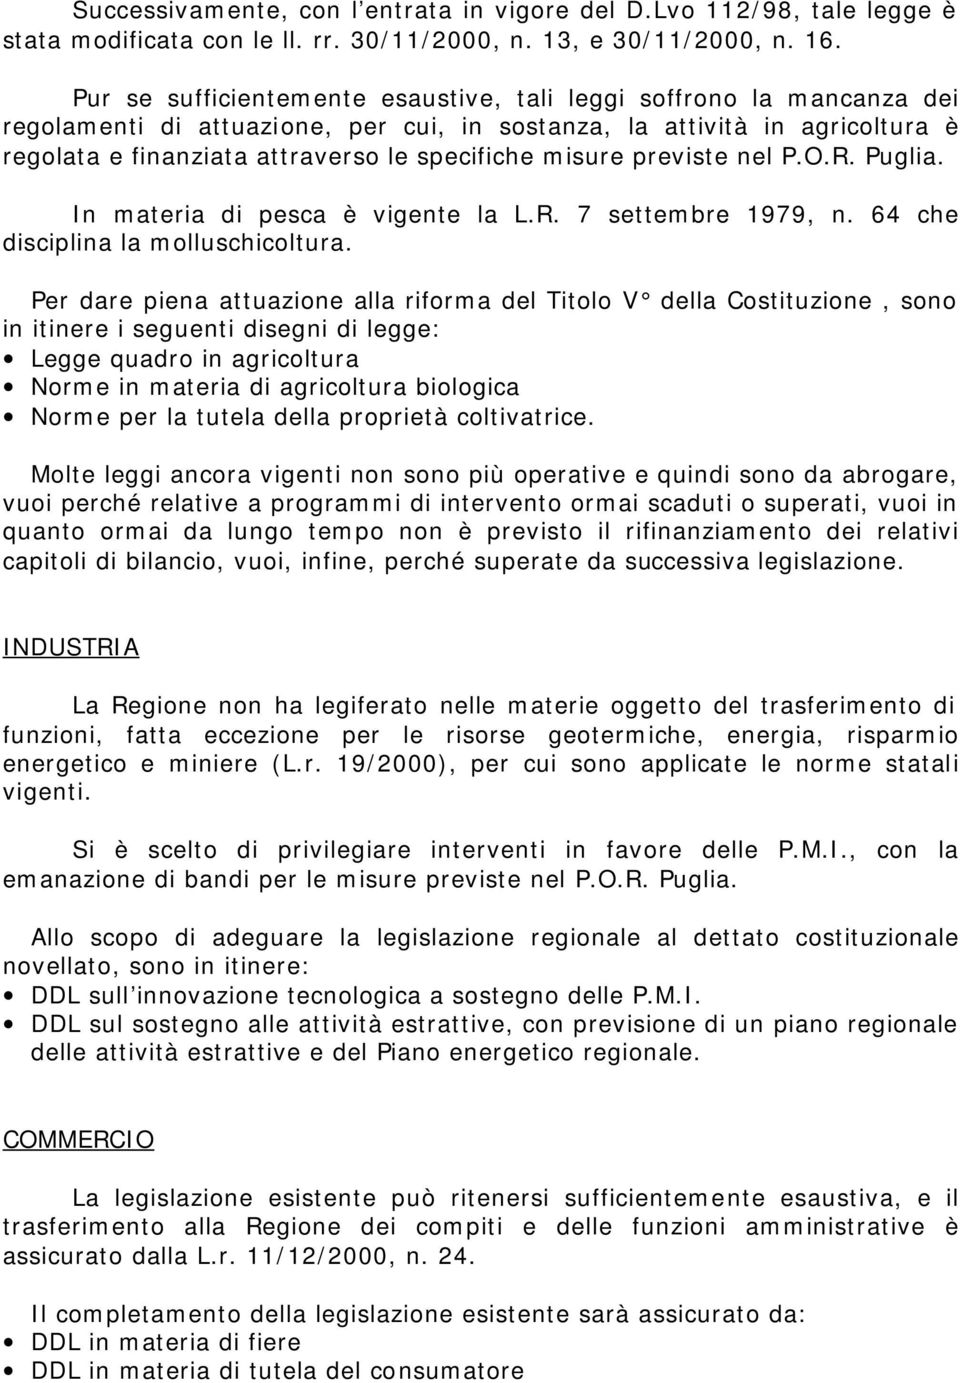 misure previste nel P.O.R. Puglia. In materia di pesca è vigente la L.R. 7 settembre 1979, n. 64 che disciplina la molluschicoltura.